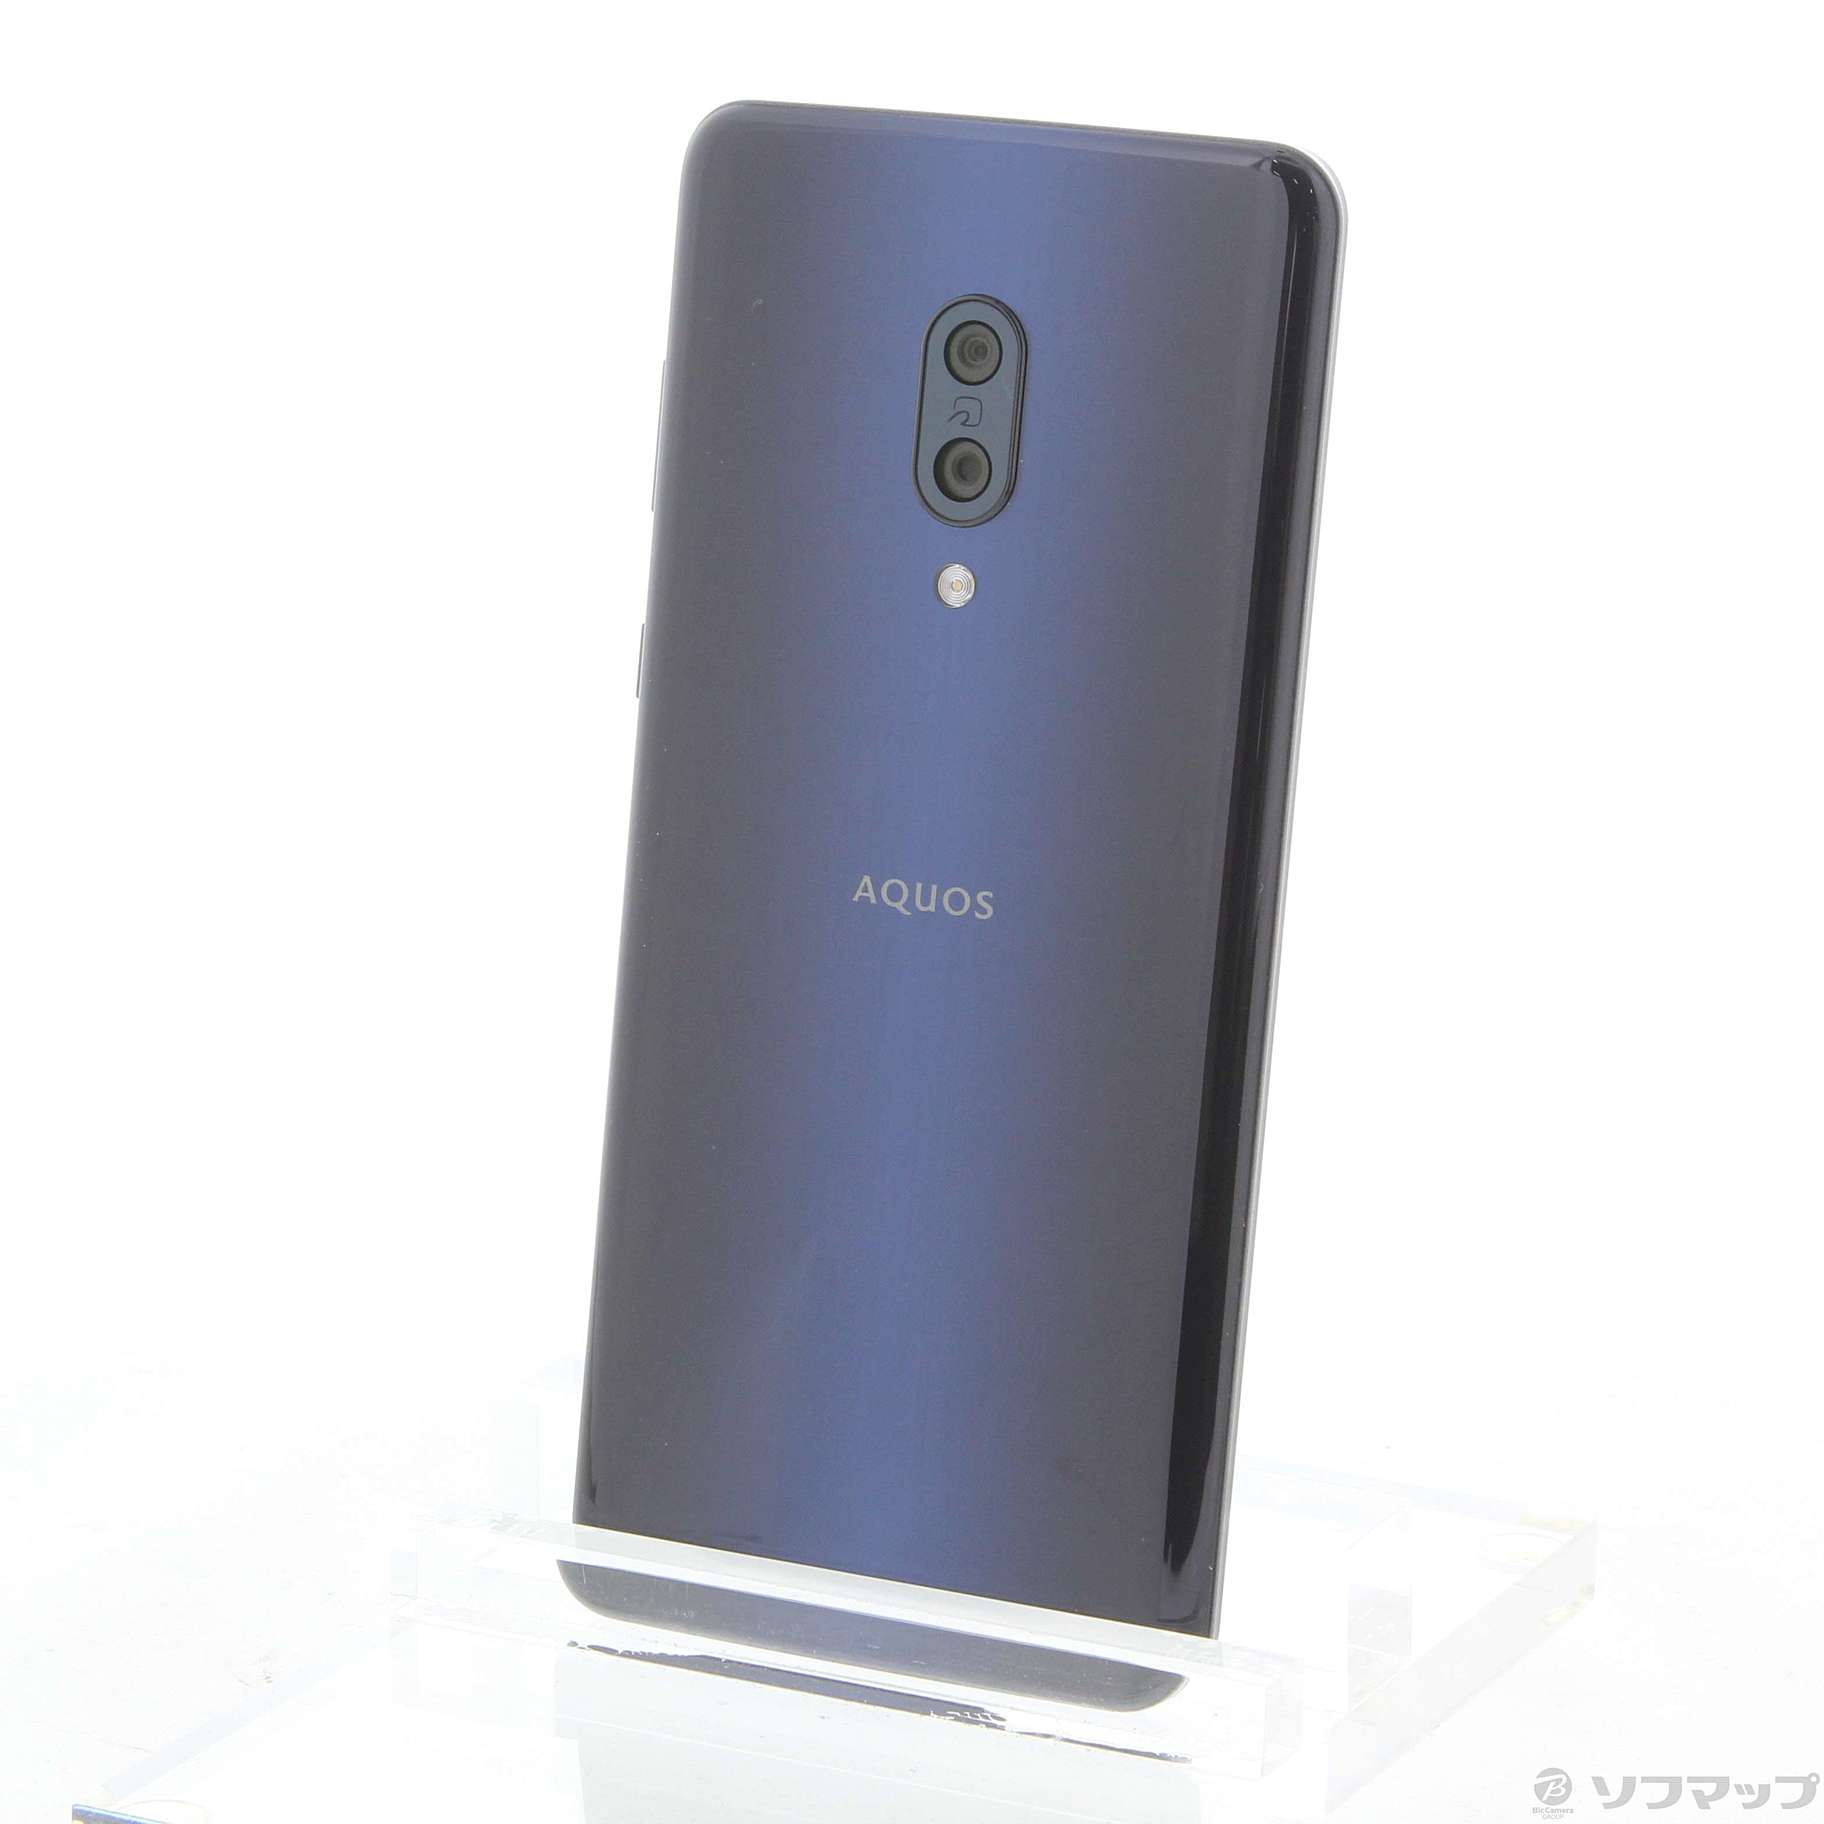 AQUOS zero2 アストロブラック 256GB - スマートフォン/携帯電話